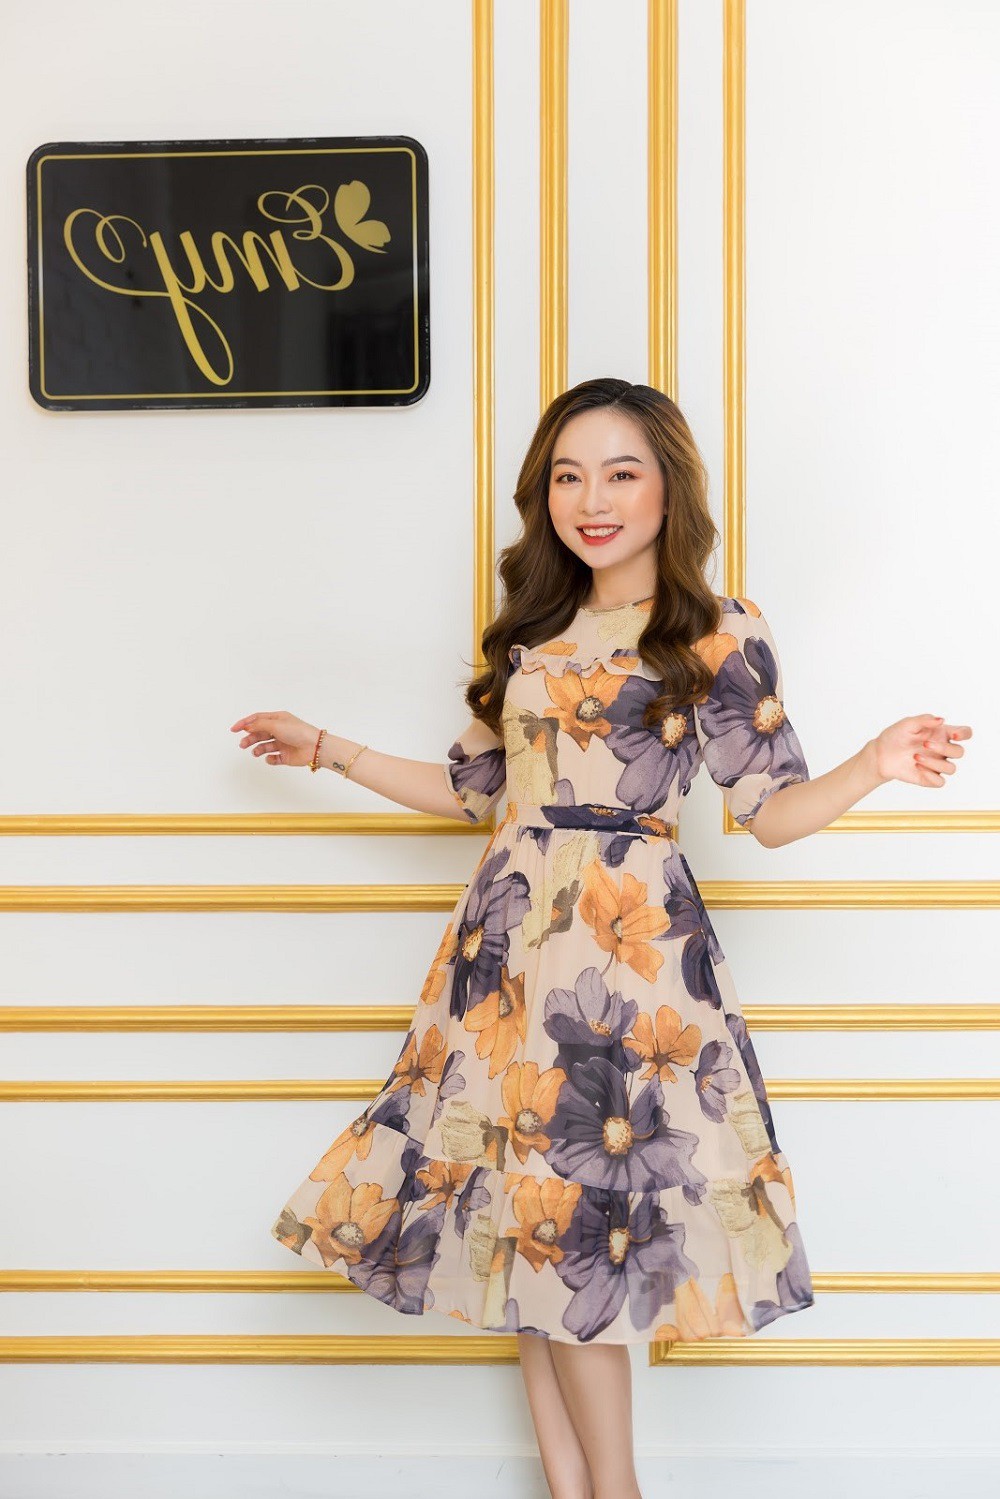 Váy Emy ra mắt cửa hàng luxury dành cho các nàng sành điệu tại Sài Gòn - Ảnh 1.